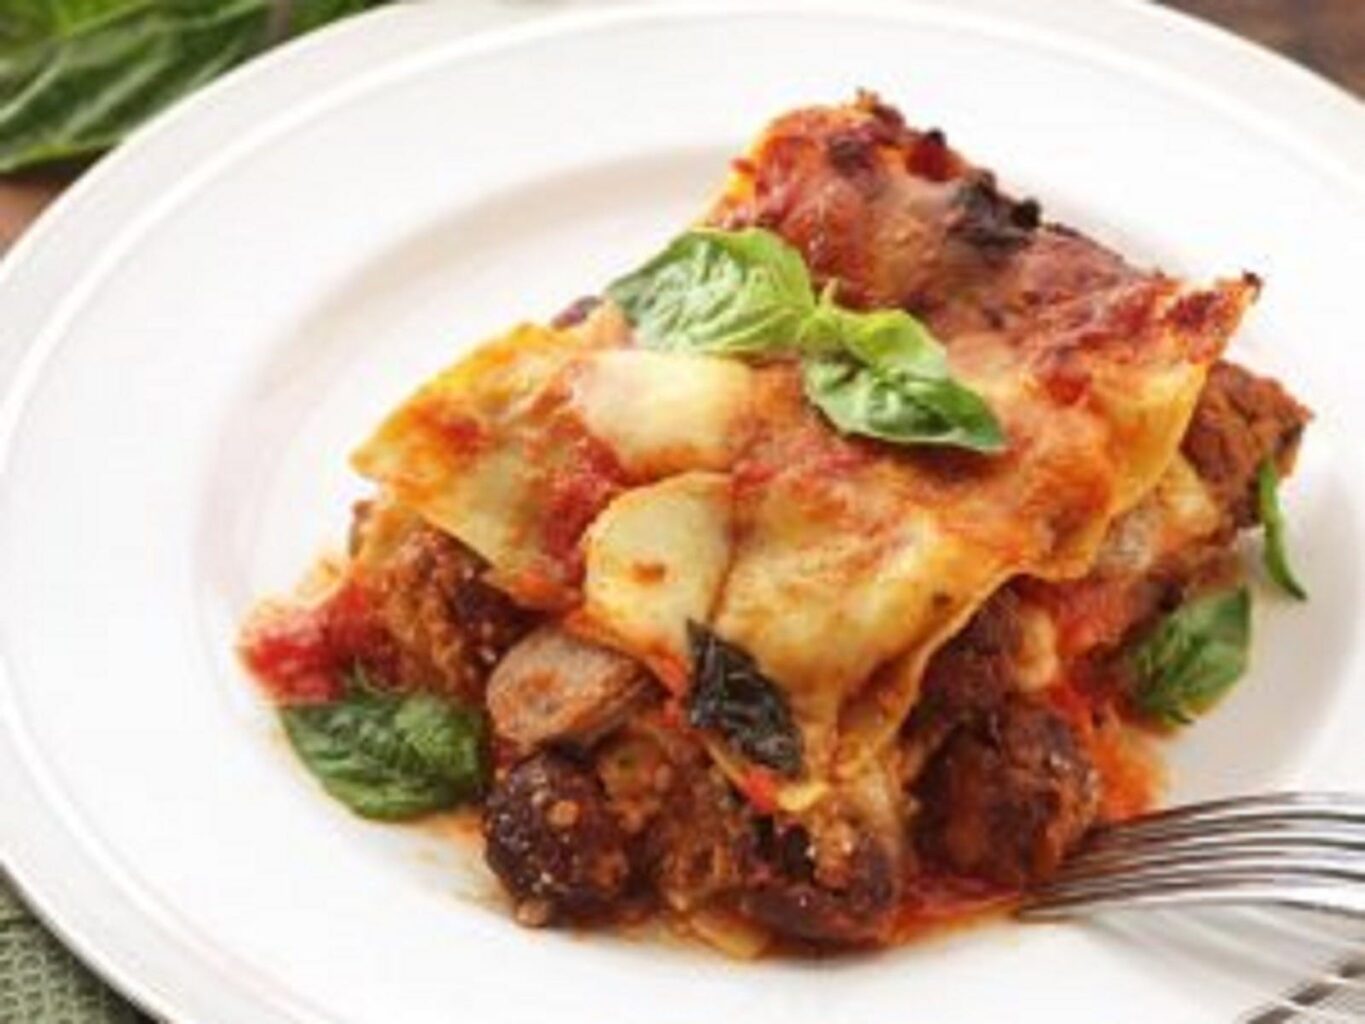 Meal - lasagna